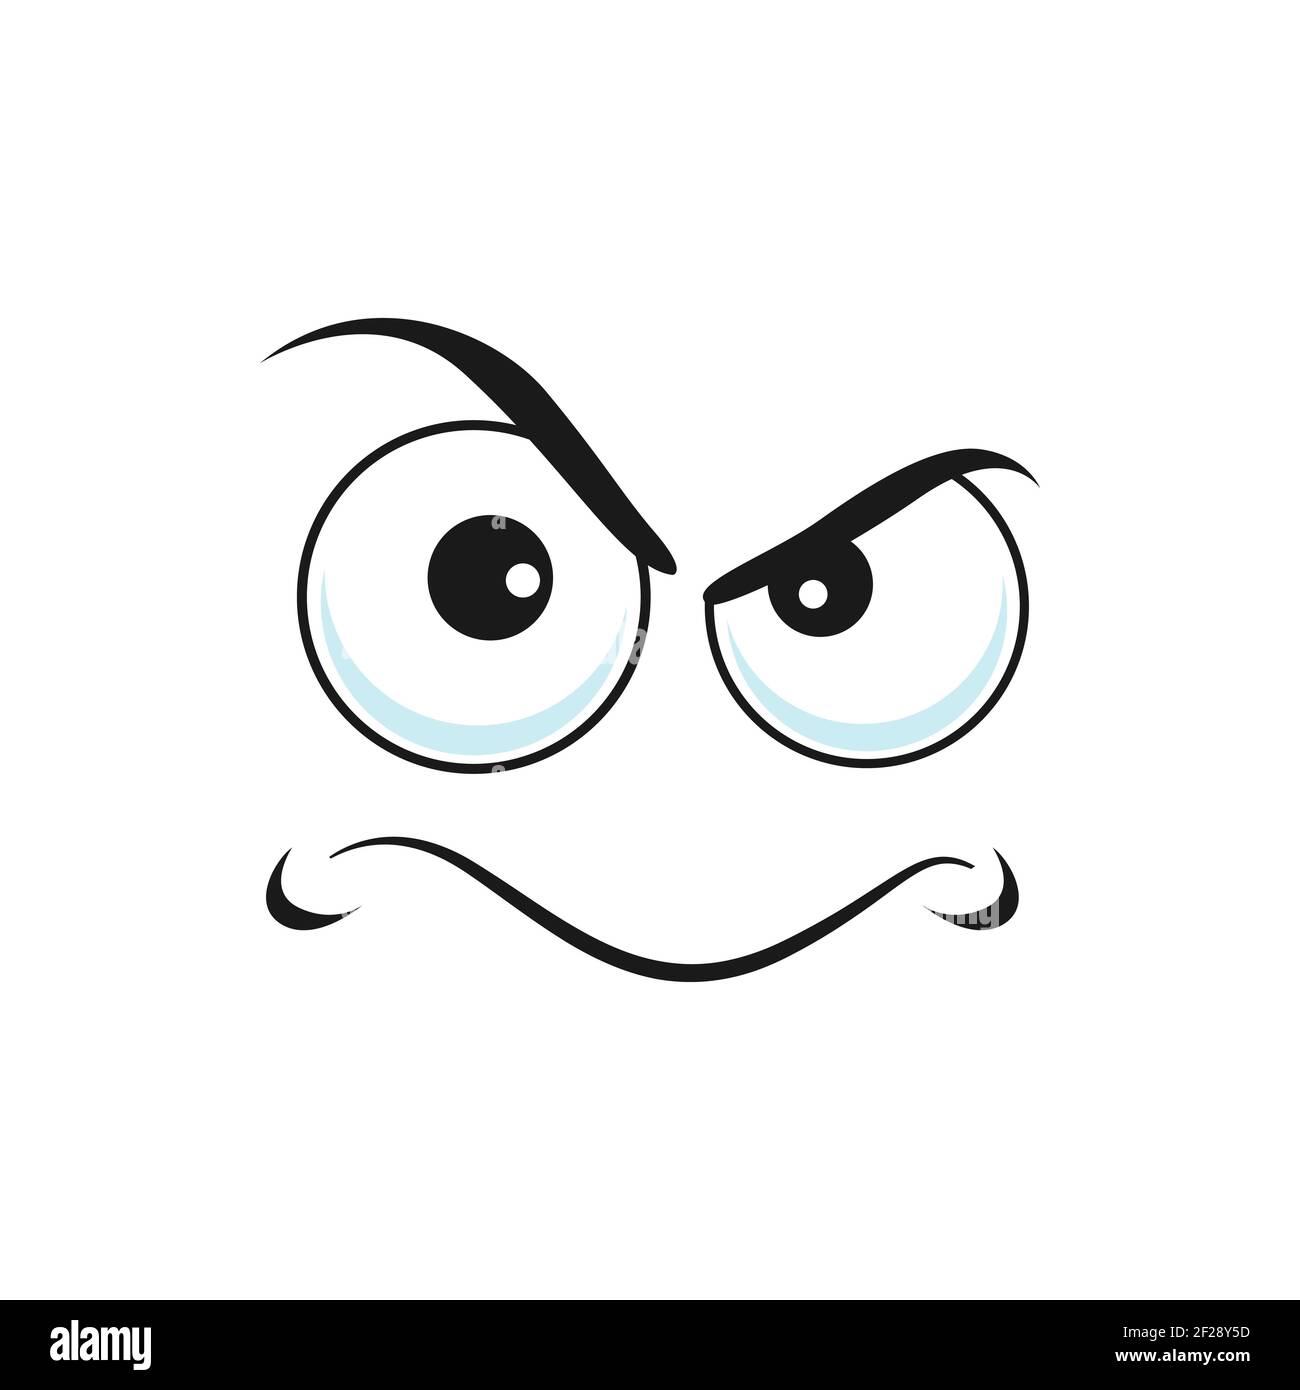 Cartoon face vector icon, disgruntled or upset emoji, funny facial ...